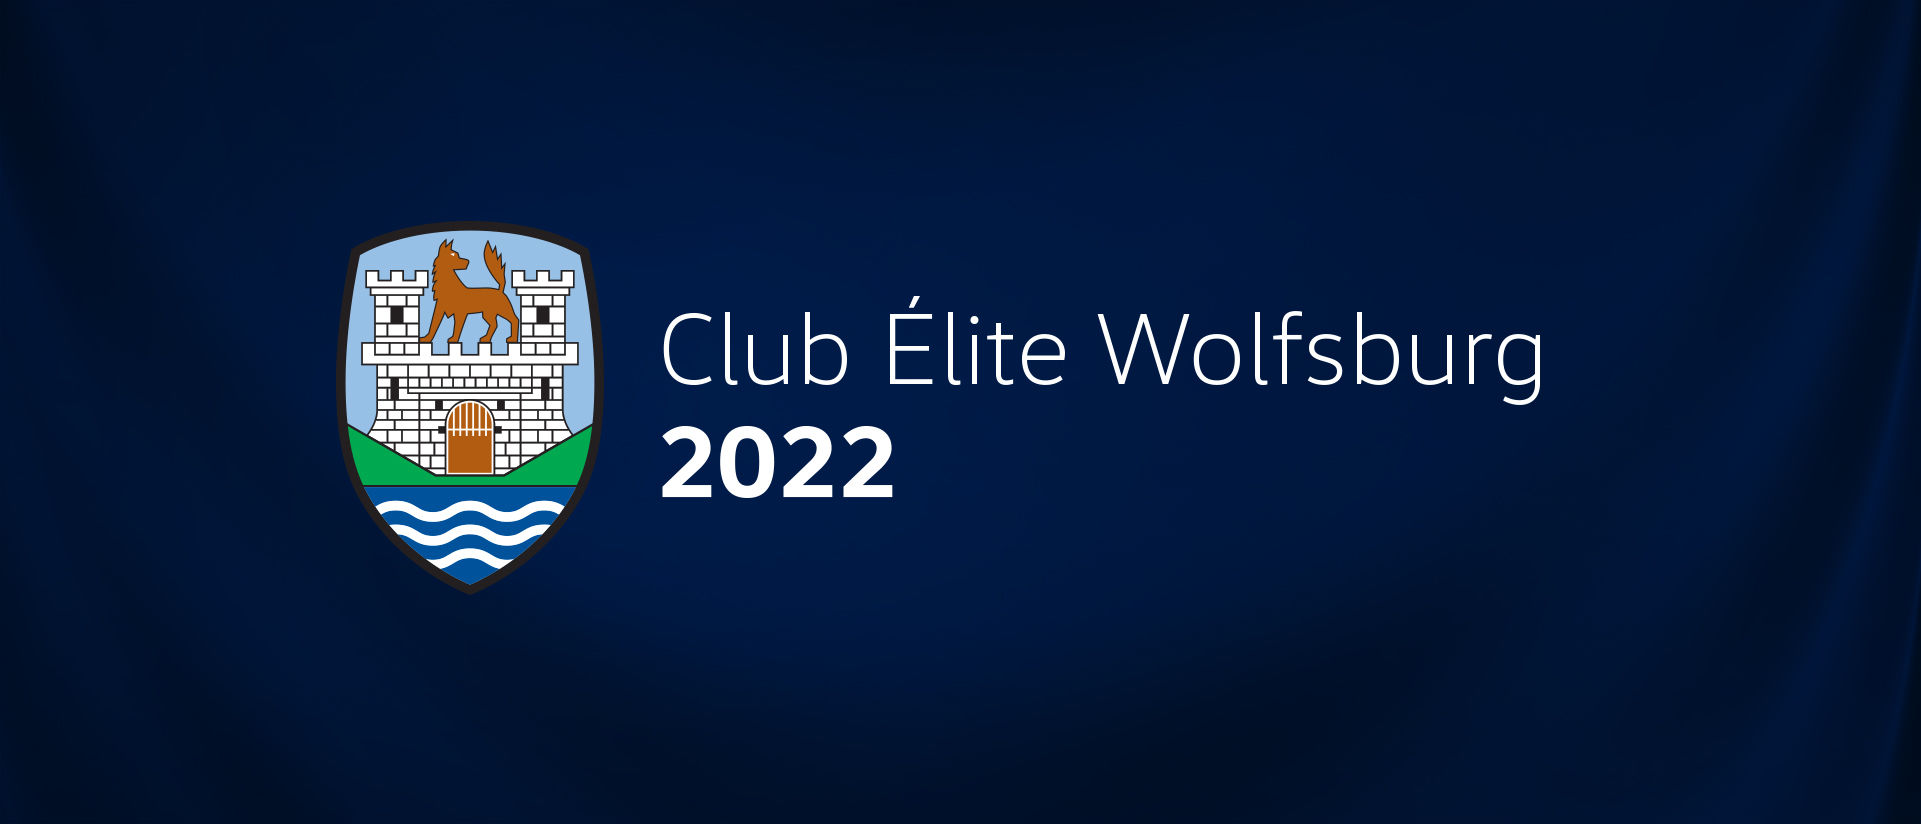 Club Élite Wolfsburg 2022